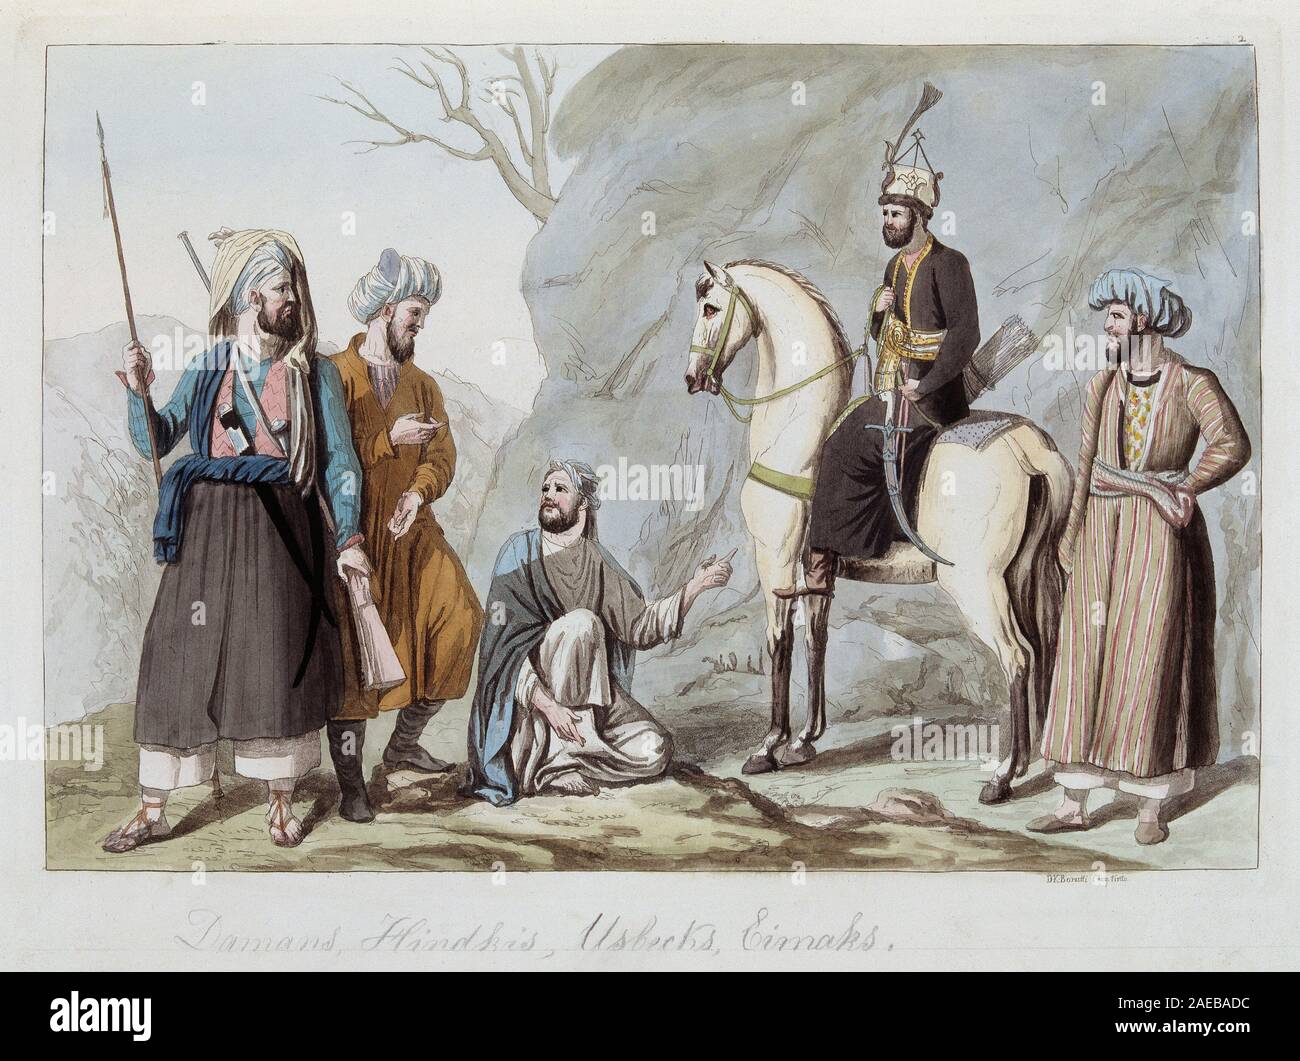 Damans, Hindkis, Ouzbeks et Eimaks d'Afghanistan - in 'Le costume ancien et moderne' par Ferrario, ed Milan, 1819-20 Stock Photo